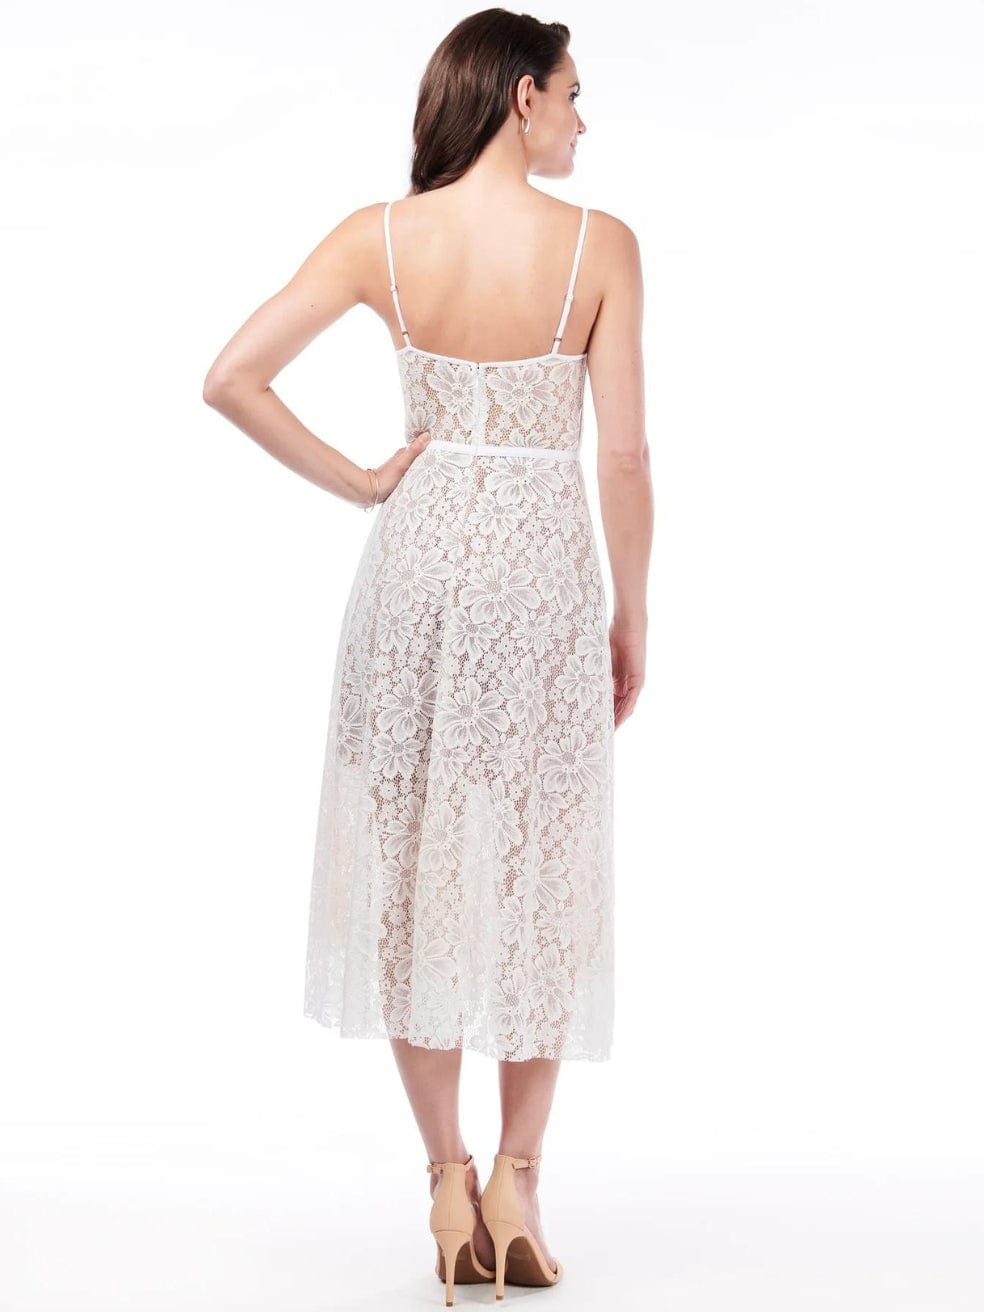 Allen Schwarz White Lace Dress